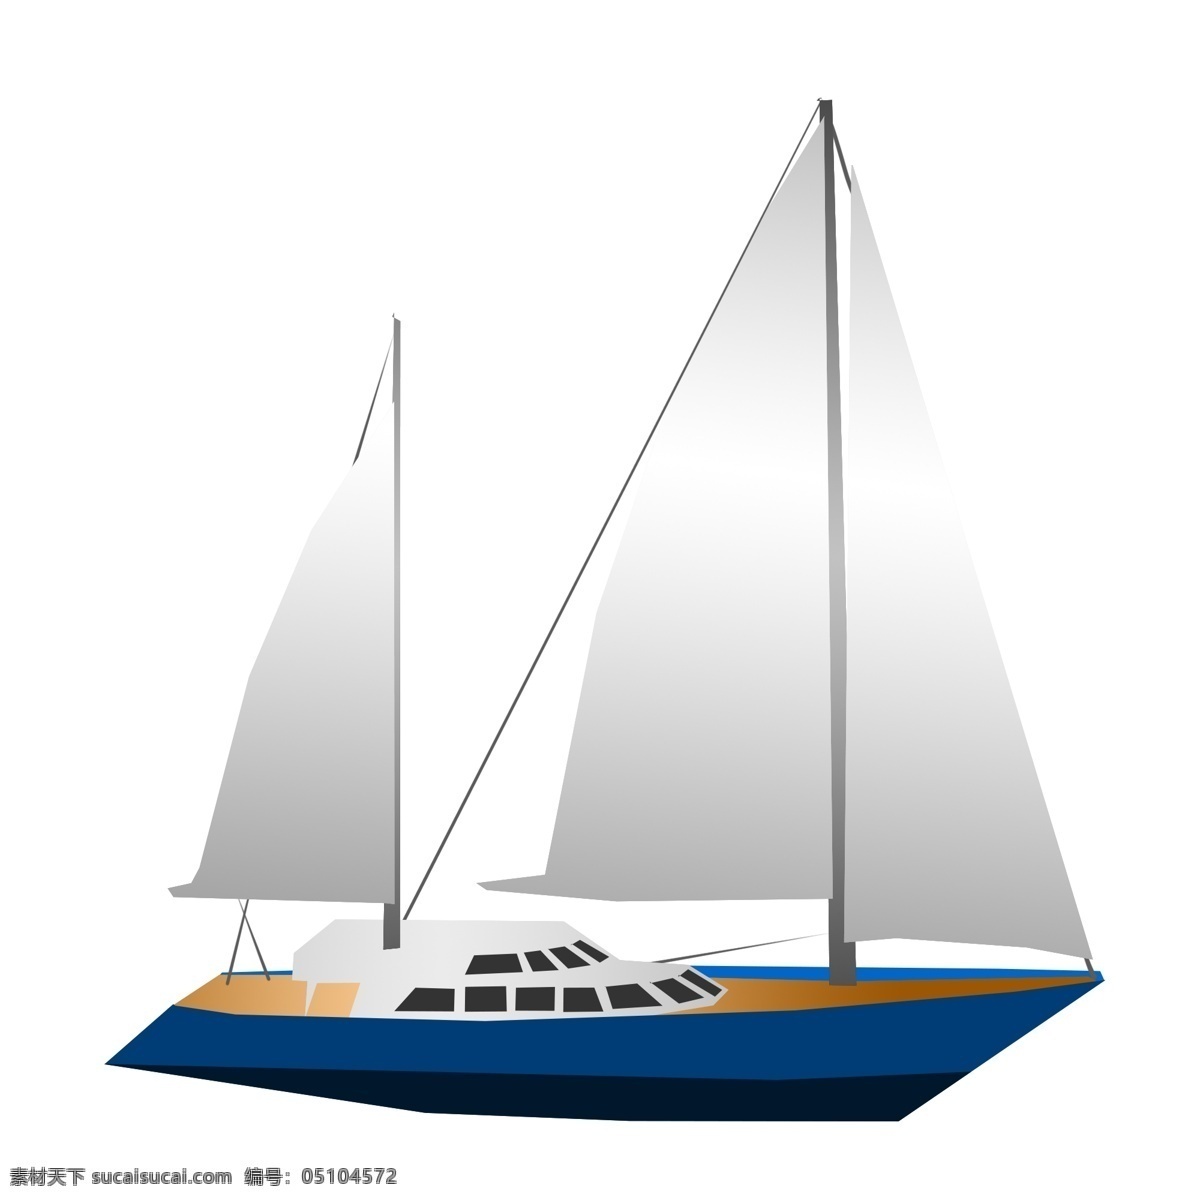 蓝色 大型 帆船 插画 大型帆船 卡通帆船 航海 海上帆船 航行的帆船 蓝色帆船插画 行驶的轮船 灰色的帆